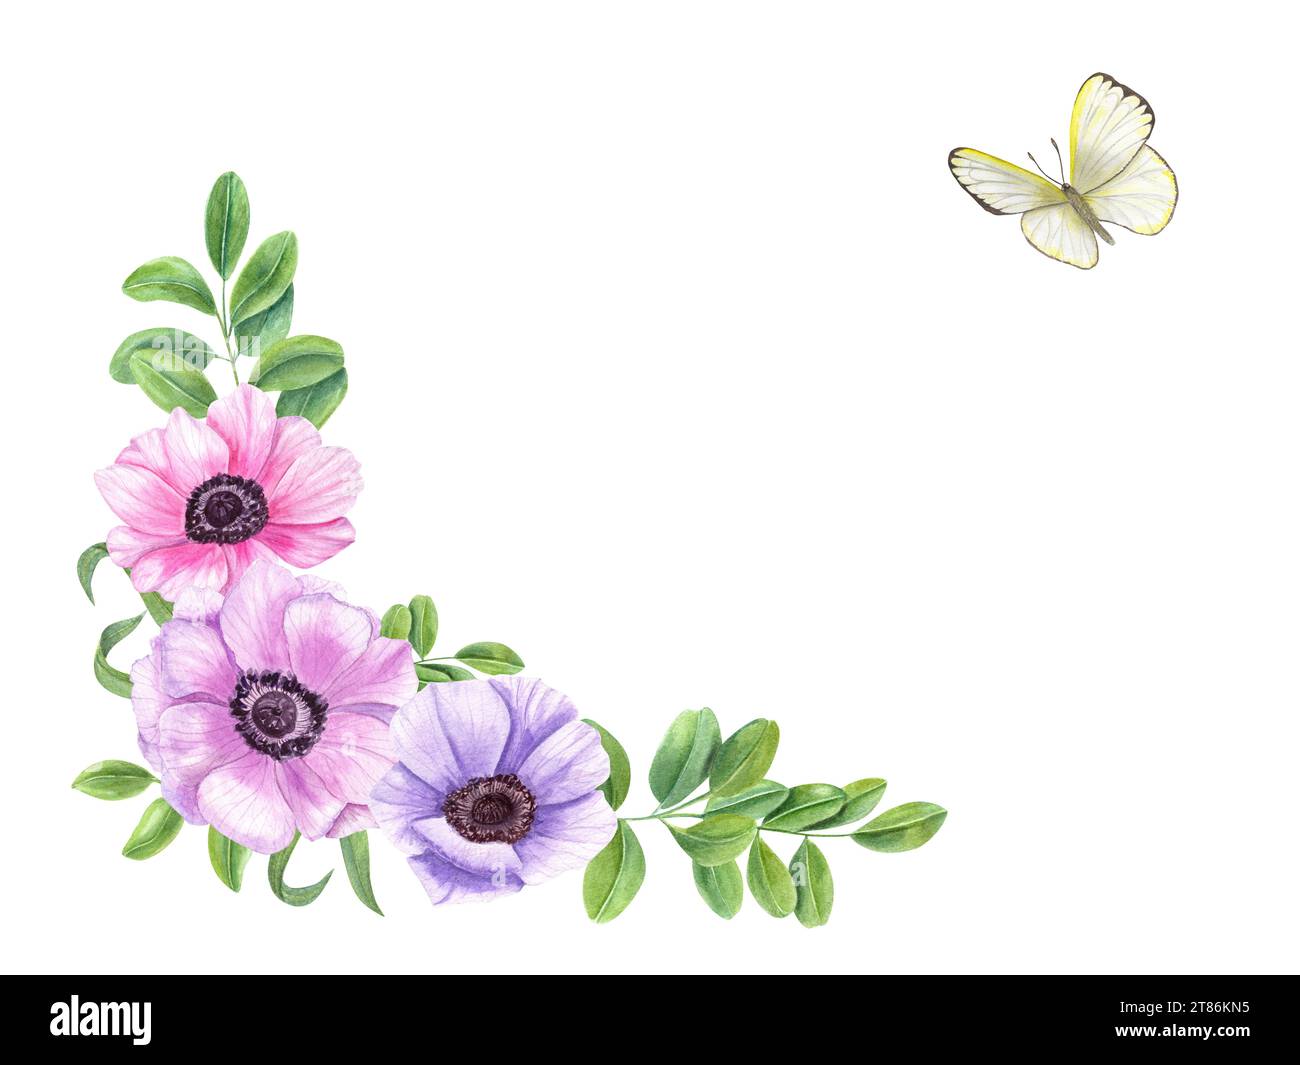 Blumengestell mit Anemonenblume, grünen Blättern und Schmetterling. Clitoria, Akazie oder Teeblatt. Weißkohl. Leerzeichen für Text. Aquarellabbildung. Stockfoto